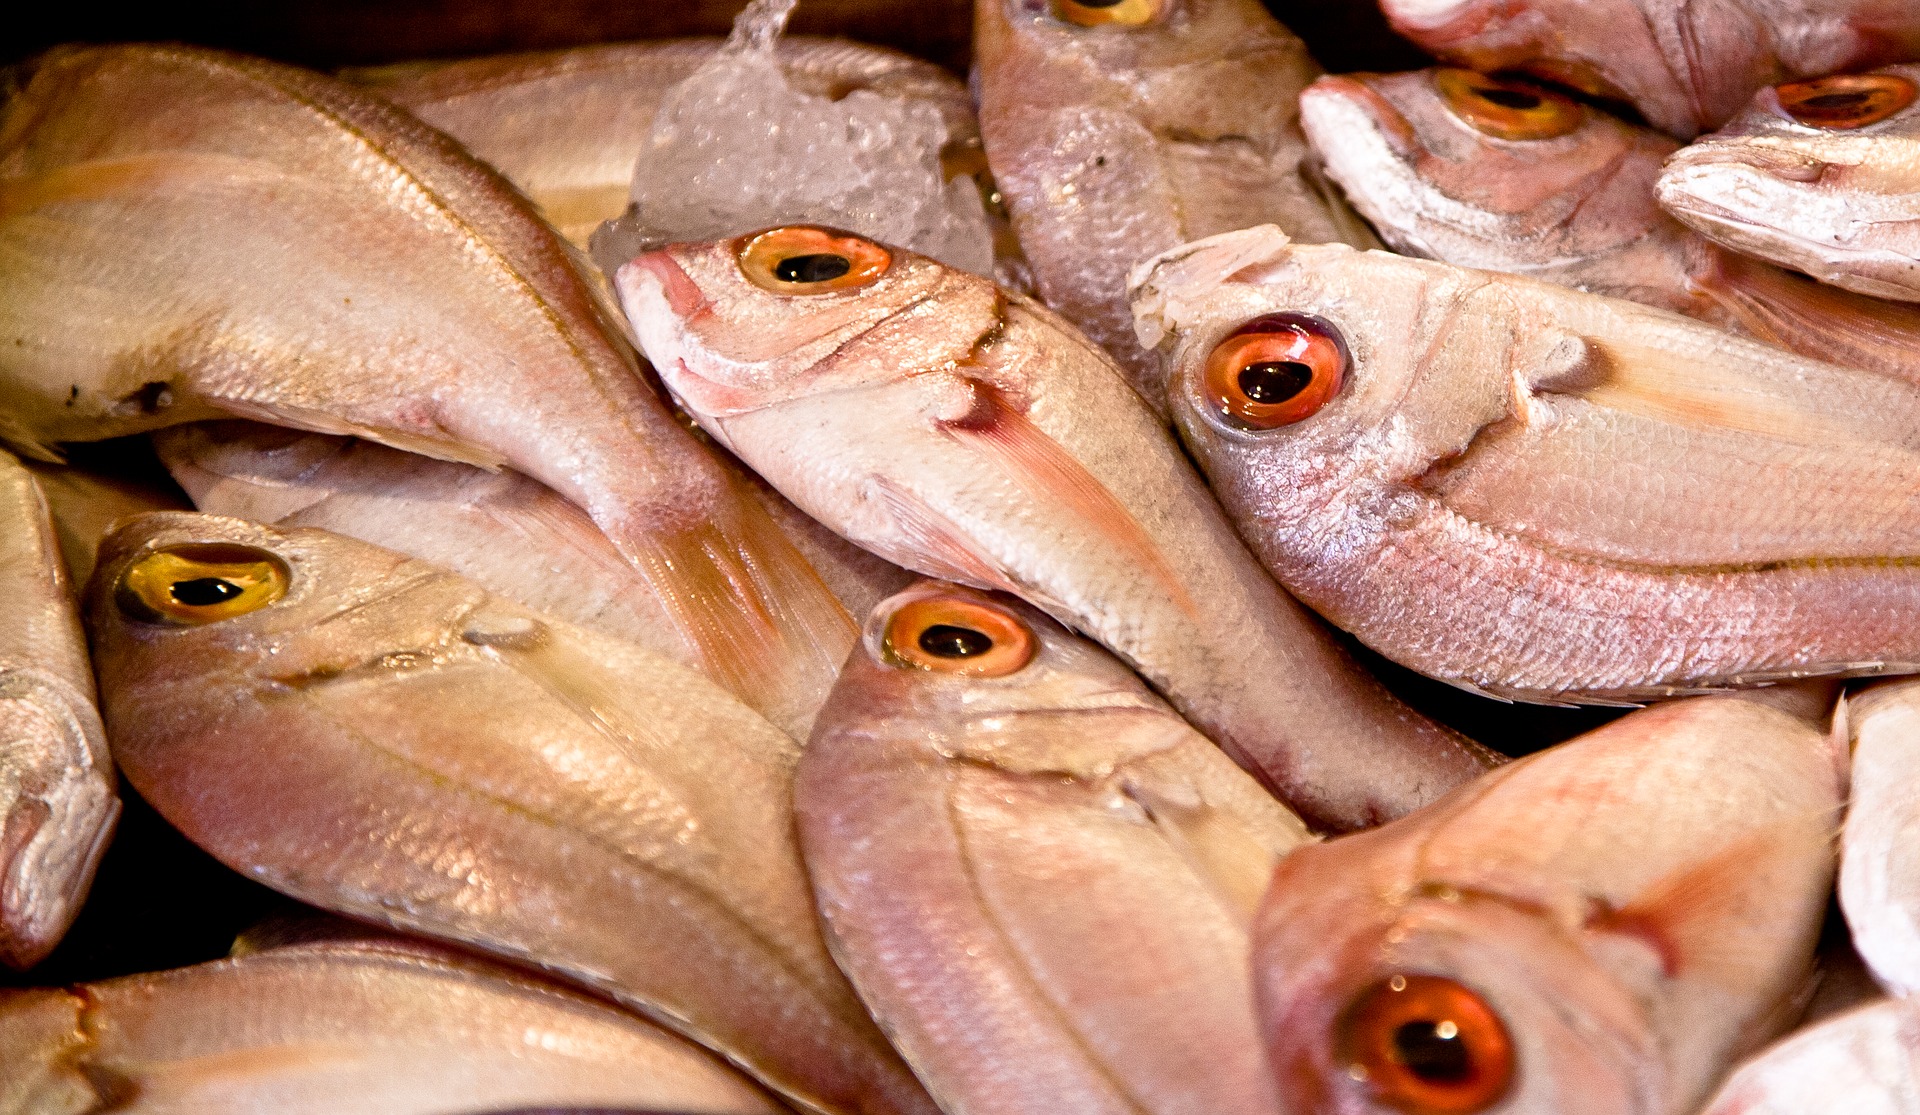 Raport: nadal zbyt dużo ryb jest odławianych